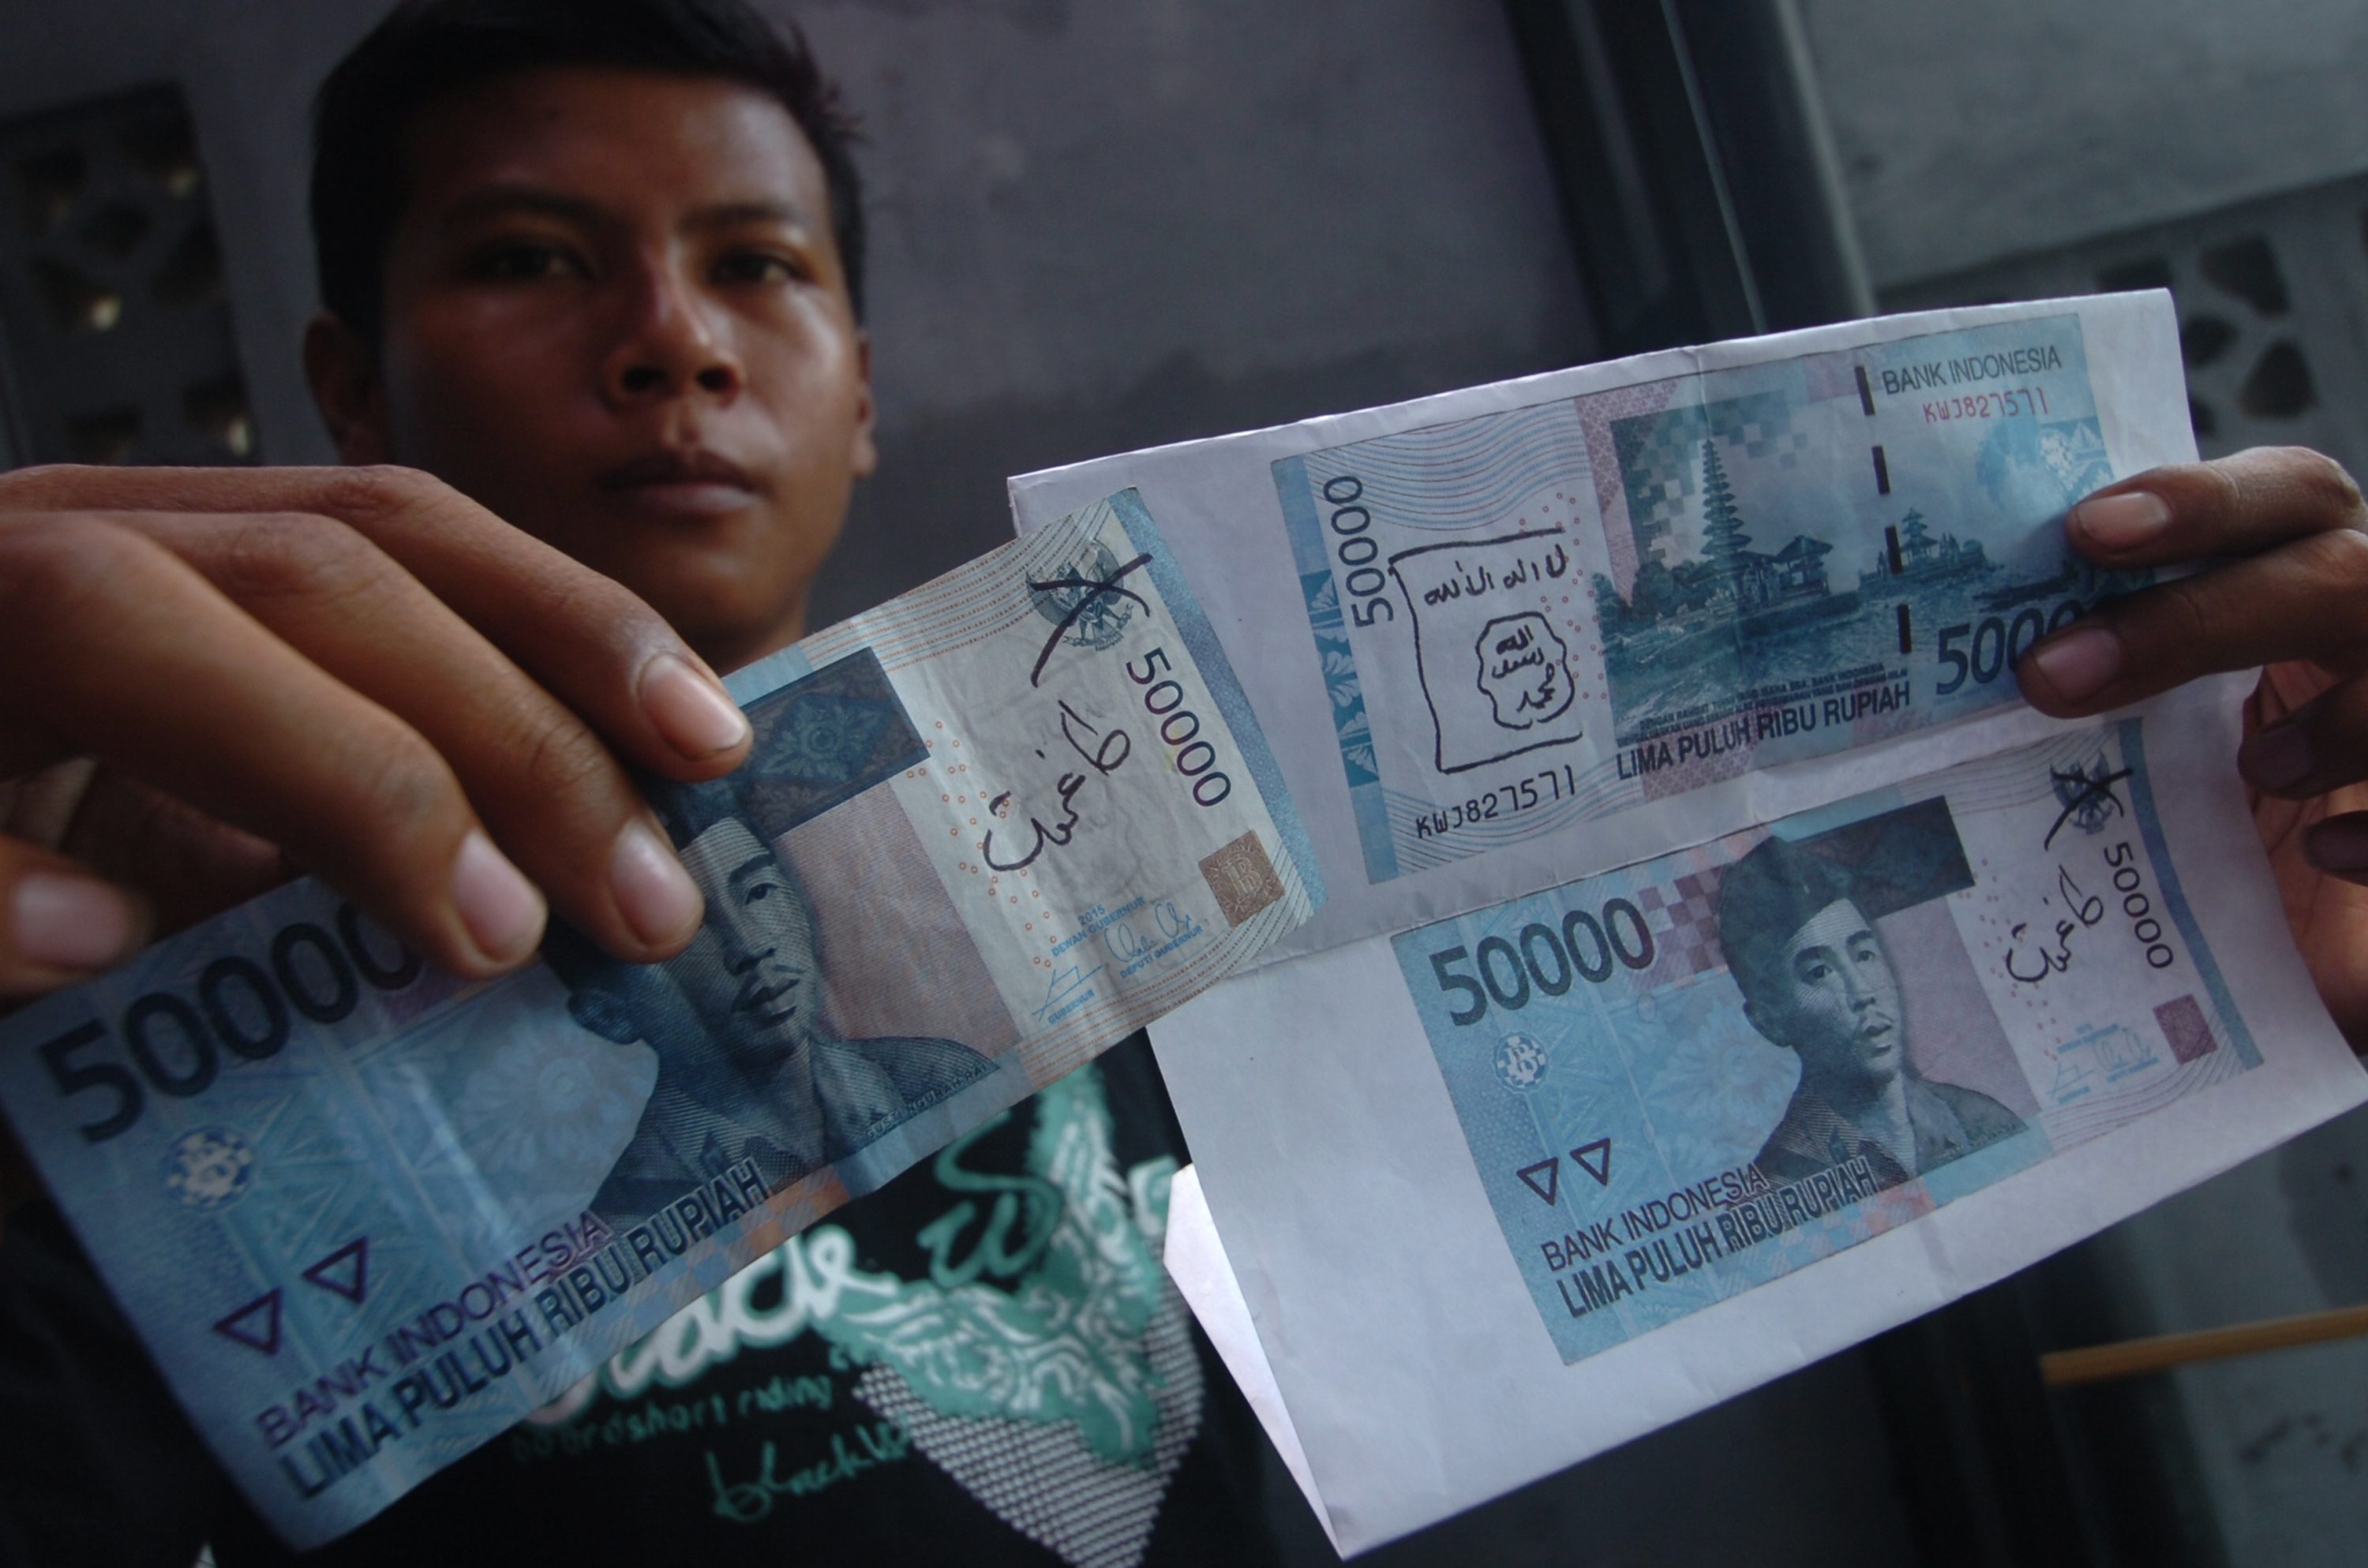 Warga menunjukkan temuan uang kertas yang dituliskan lambang ISIS di Kabupaten Ciamis, Jawa Barat, pada 27 Januari 2016. Foto oleh Adeng Bustomi/Antara 